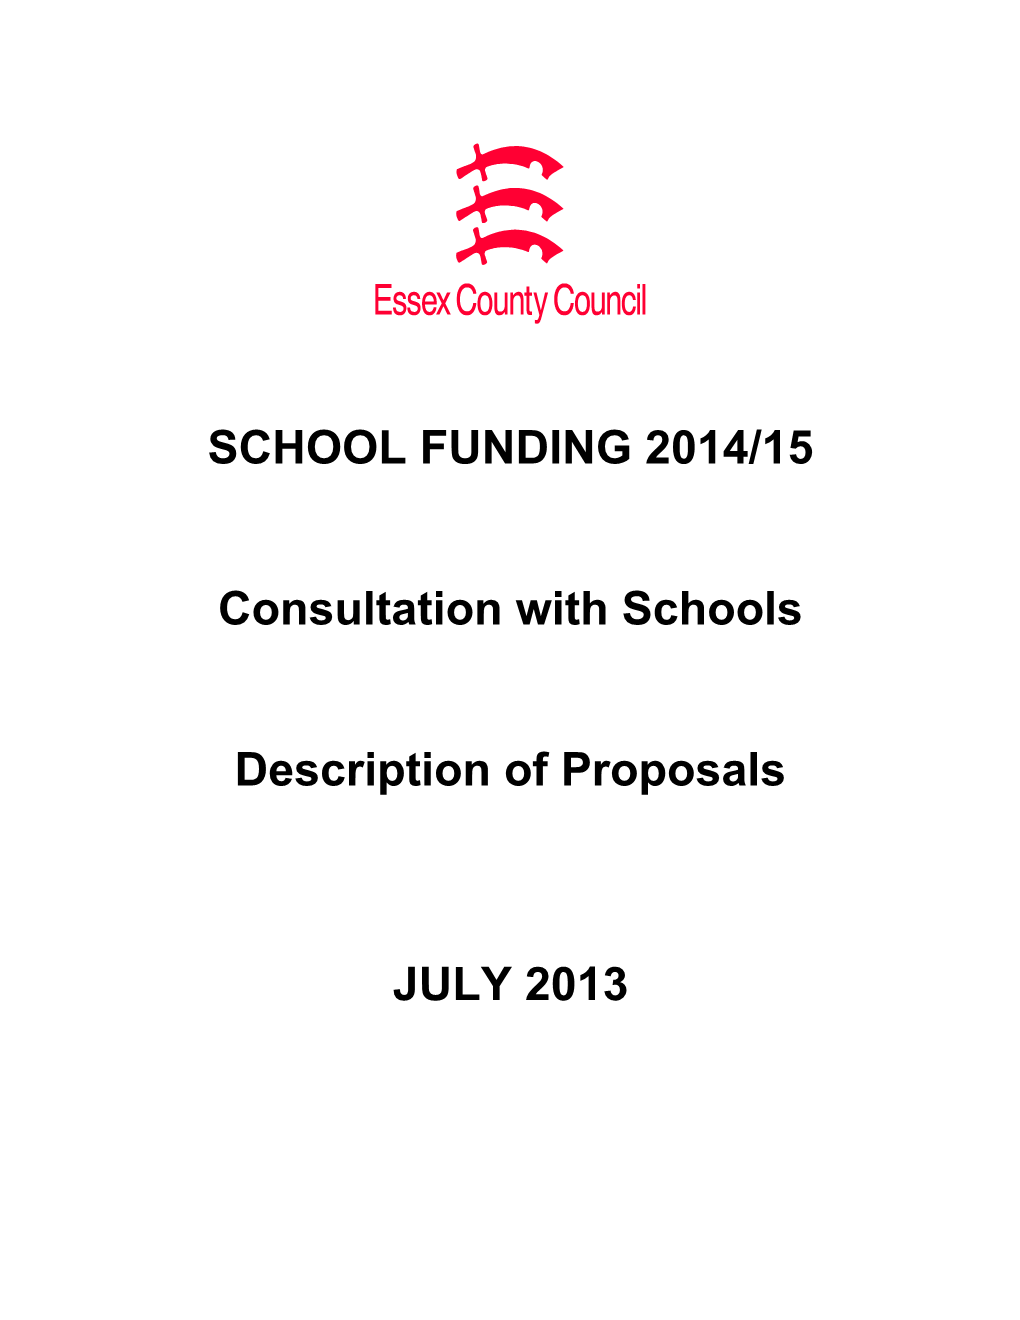 School Funding 2014/15